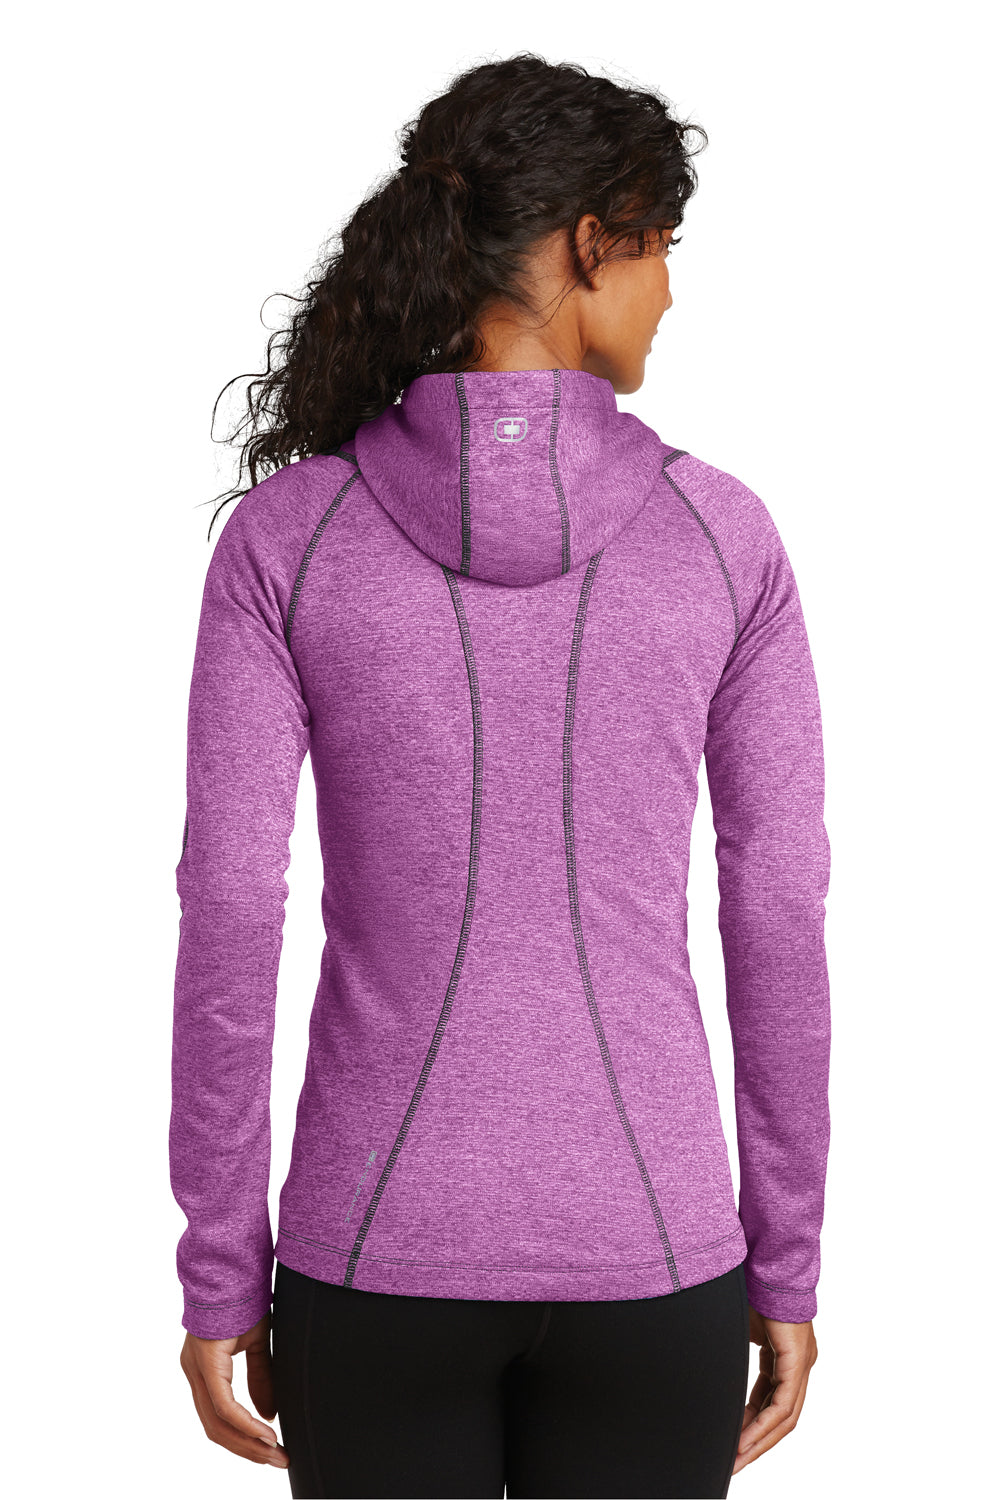 Ogio LOE501 Womens Endurance Pursuit Full Zip Hooded Sweatshirt Hoodie Impact Purple Back